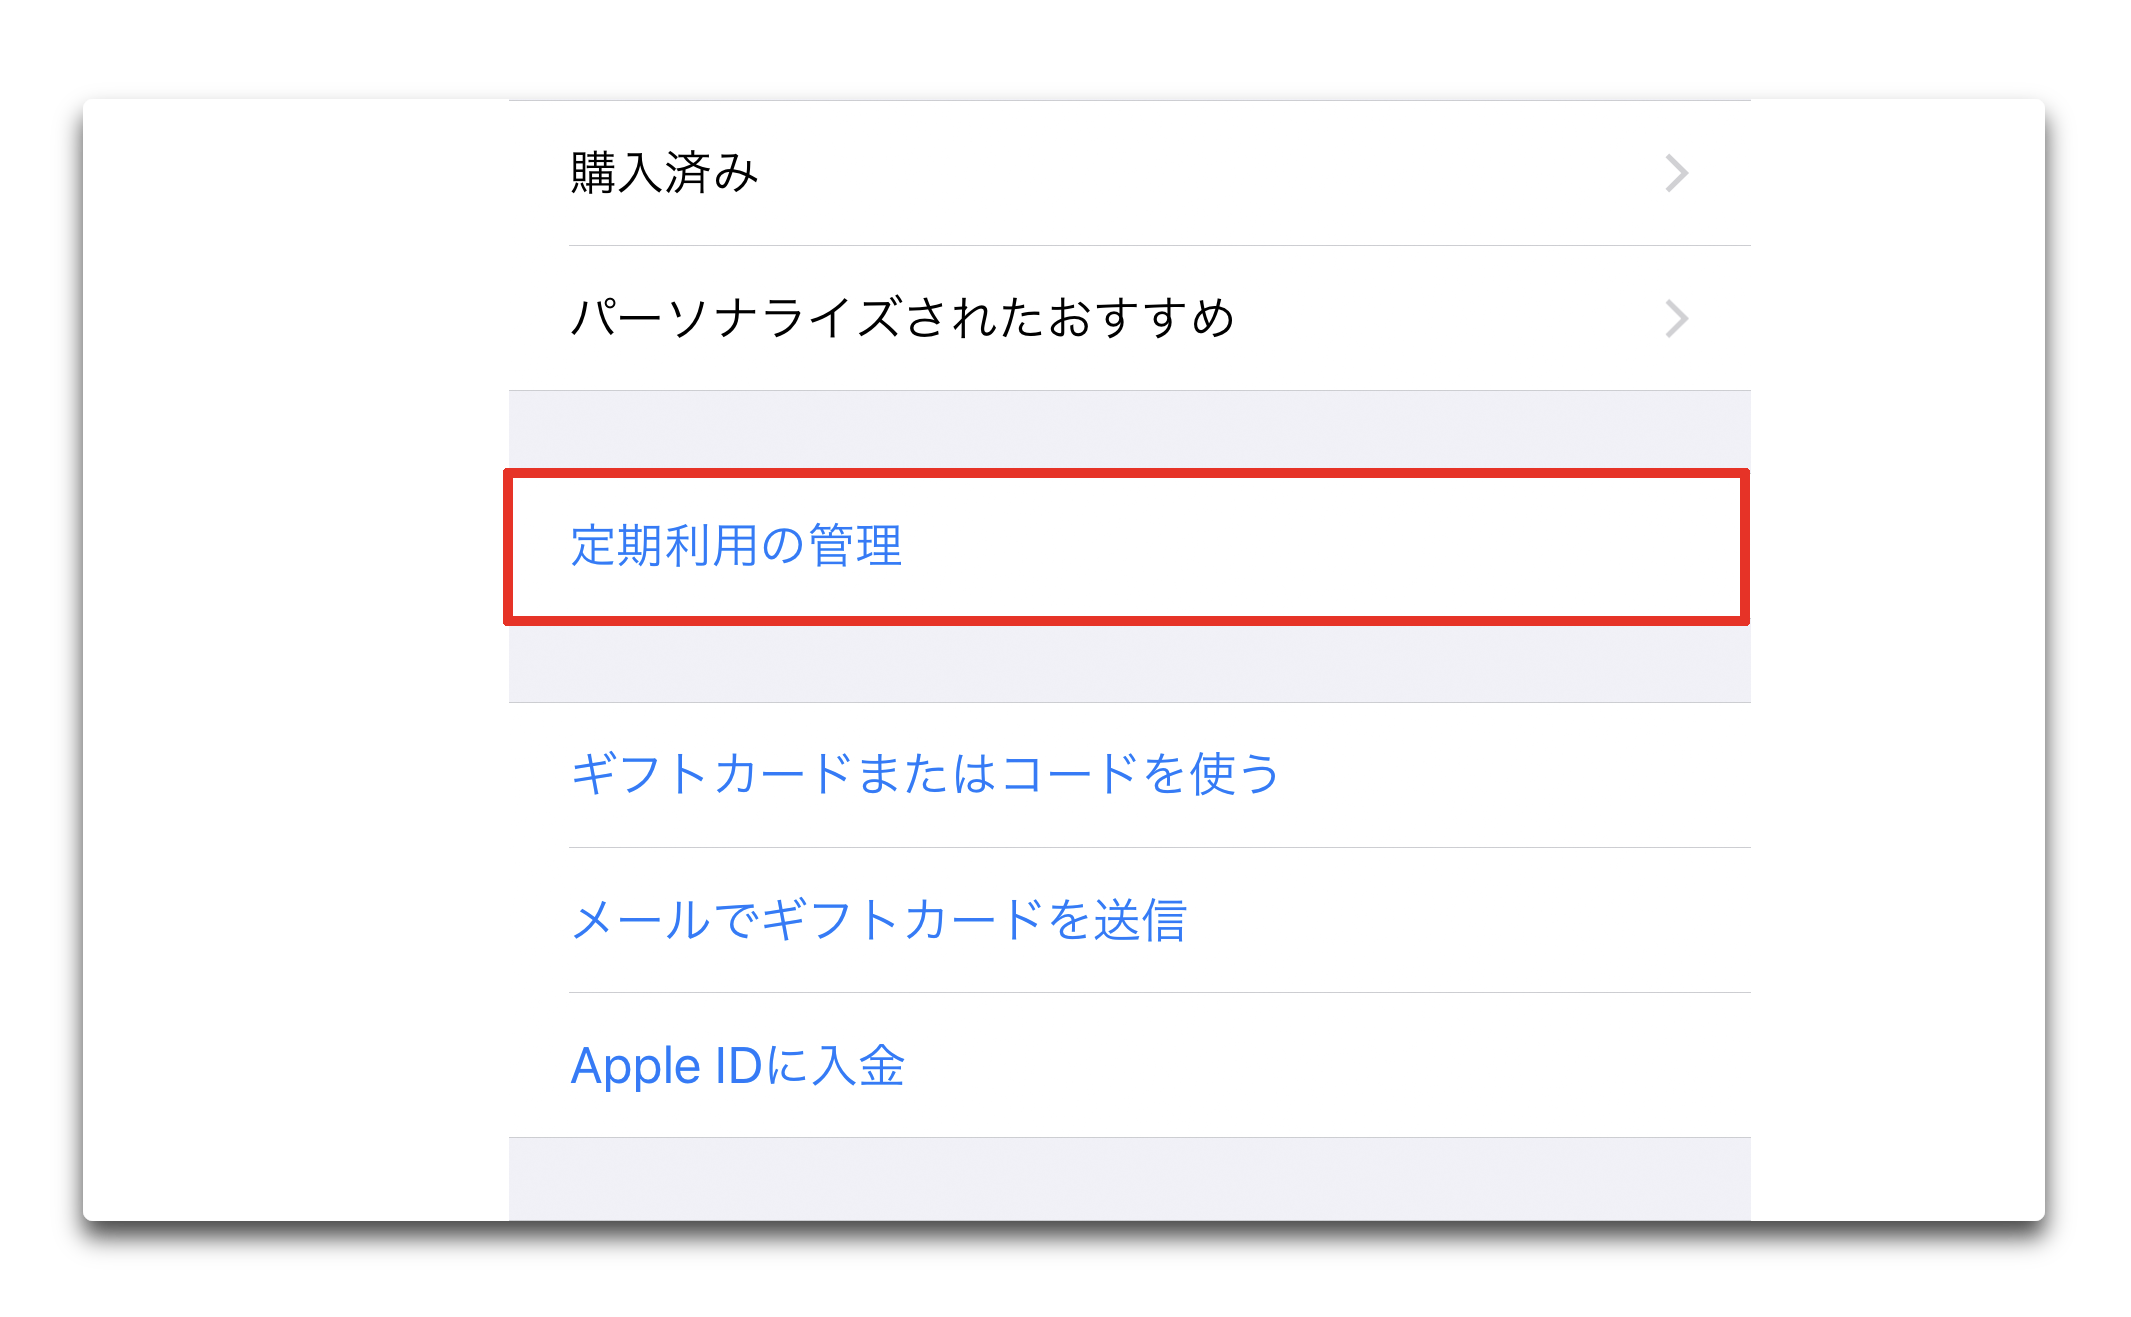 iOS 12.1.4では、「定期購読内容を管理」が大幅に簡素化されている